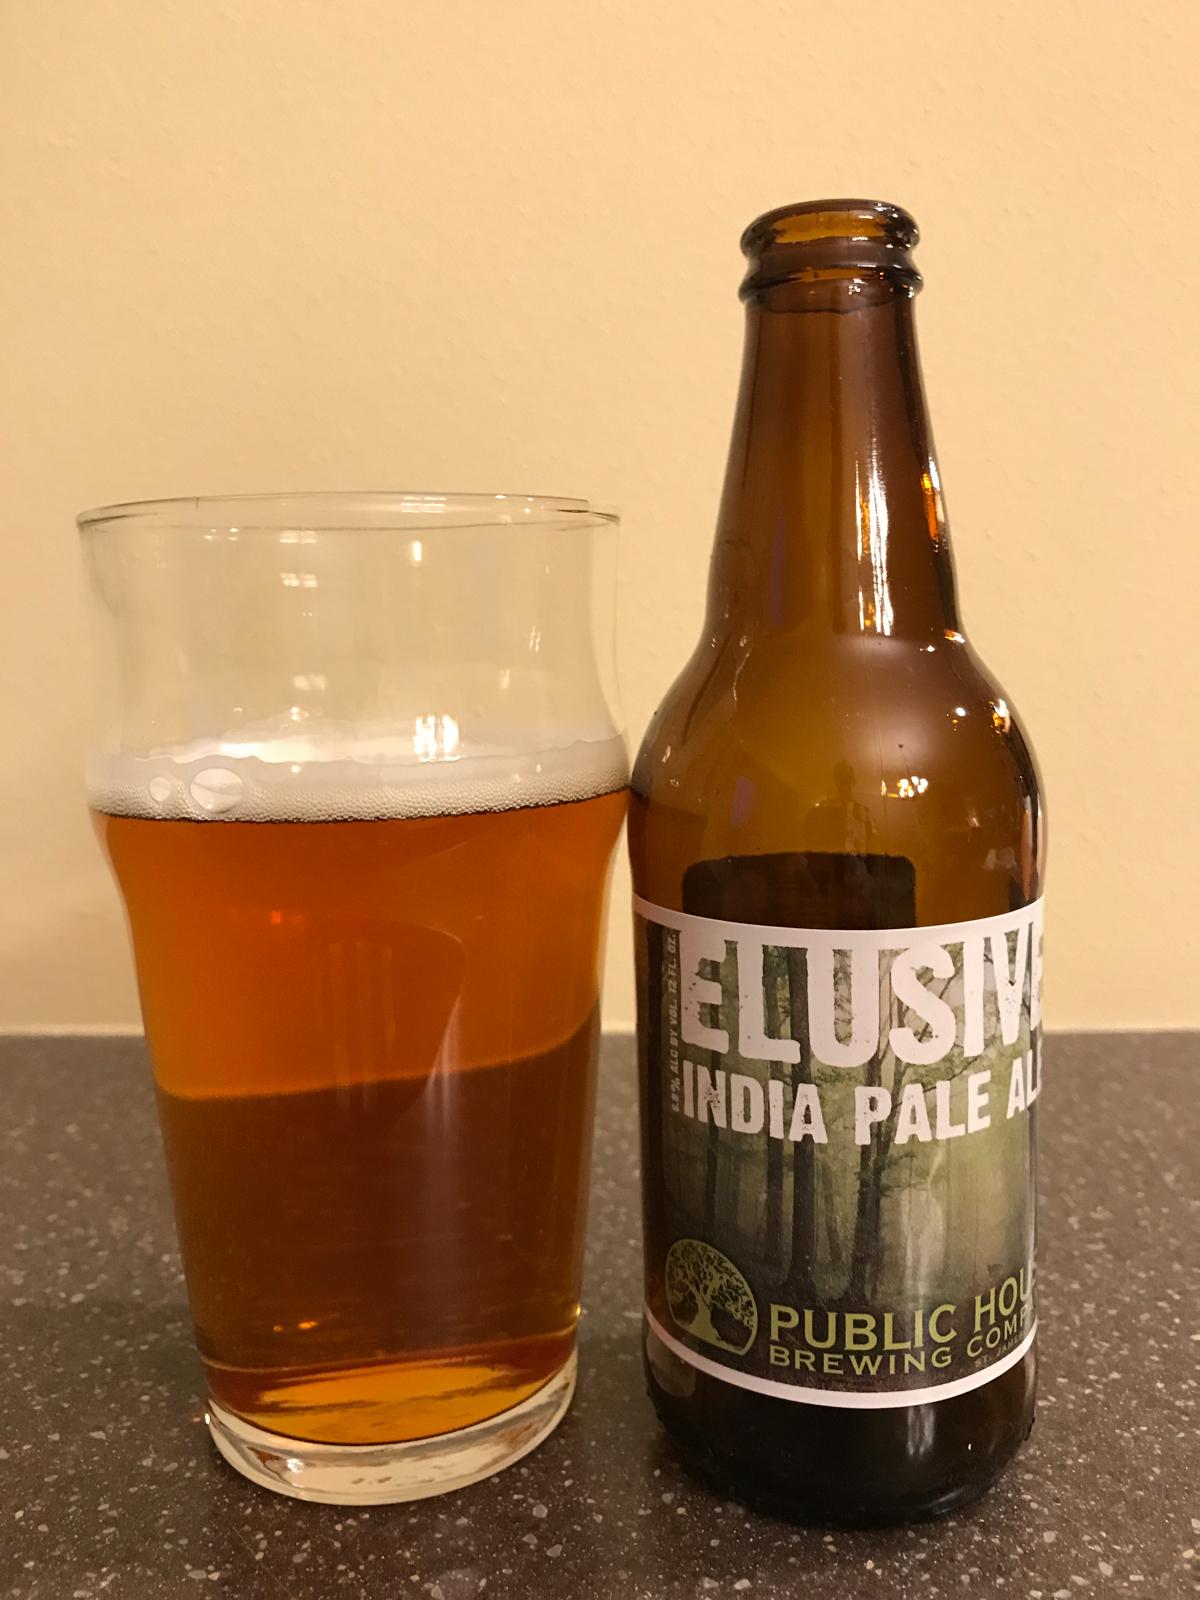 Elusive India Pale Ale